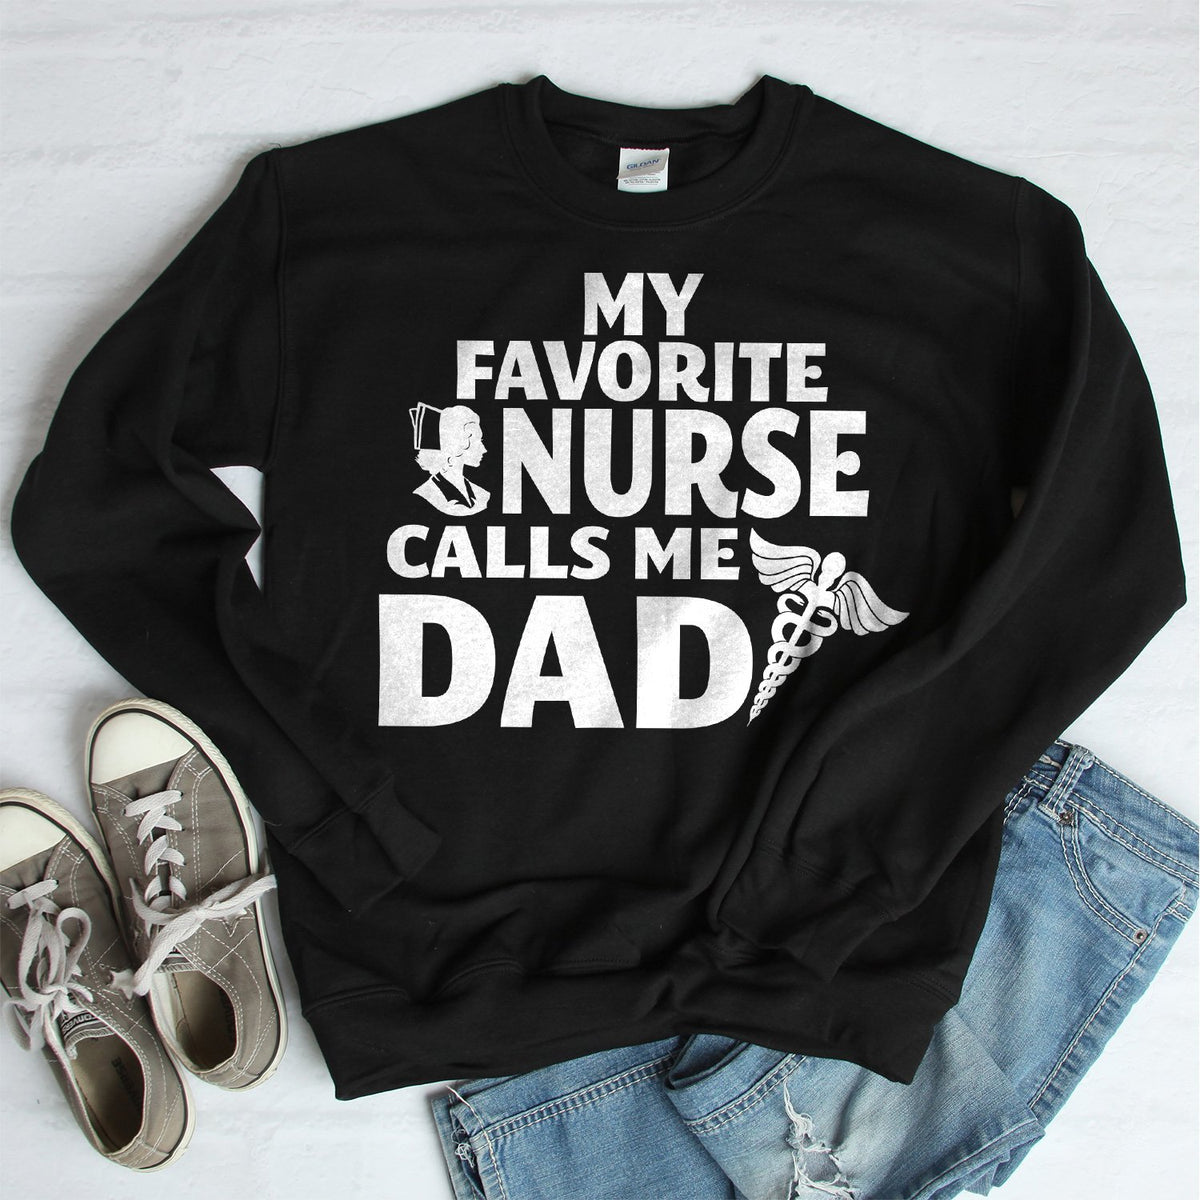 My Favorite Nurse Calls Me Dad - Long Sleeve Heavy Crewneck Sweatshirt